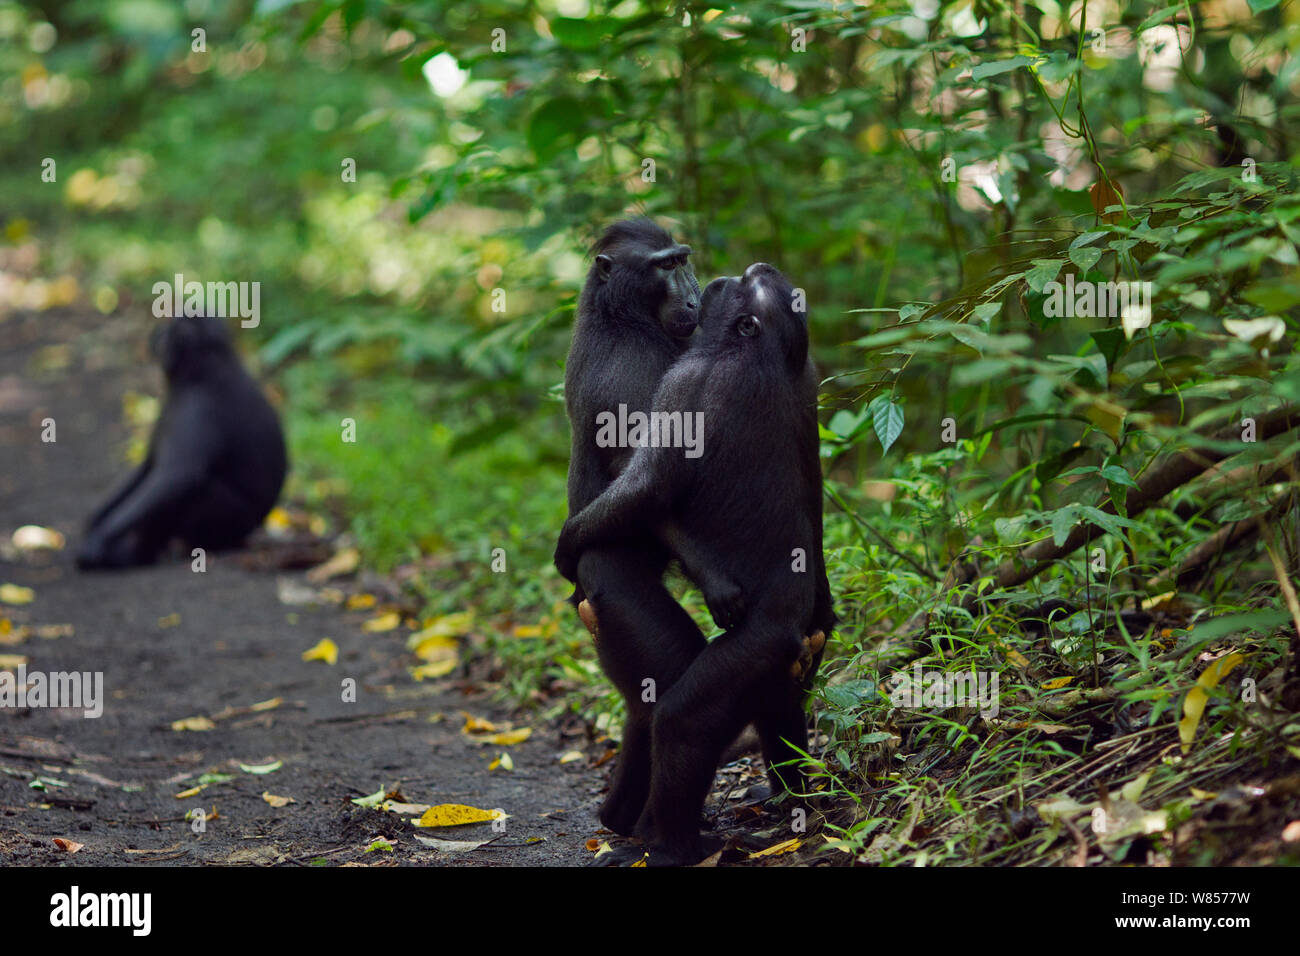 Les Célèbes / Black crested macaque (Macaca nigra) les mâles des groupes rivaux chaque message d'autres en se tenant debout et s'étreindre, Parc National de Tangkoko, Sulawesi, Indonésie. Banque D'Images